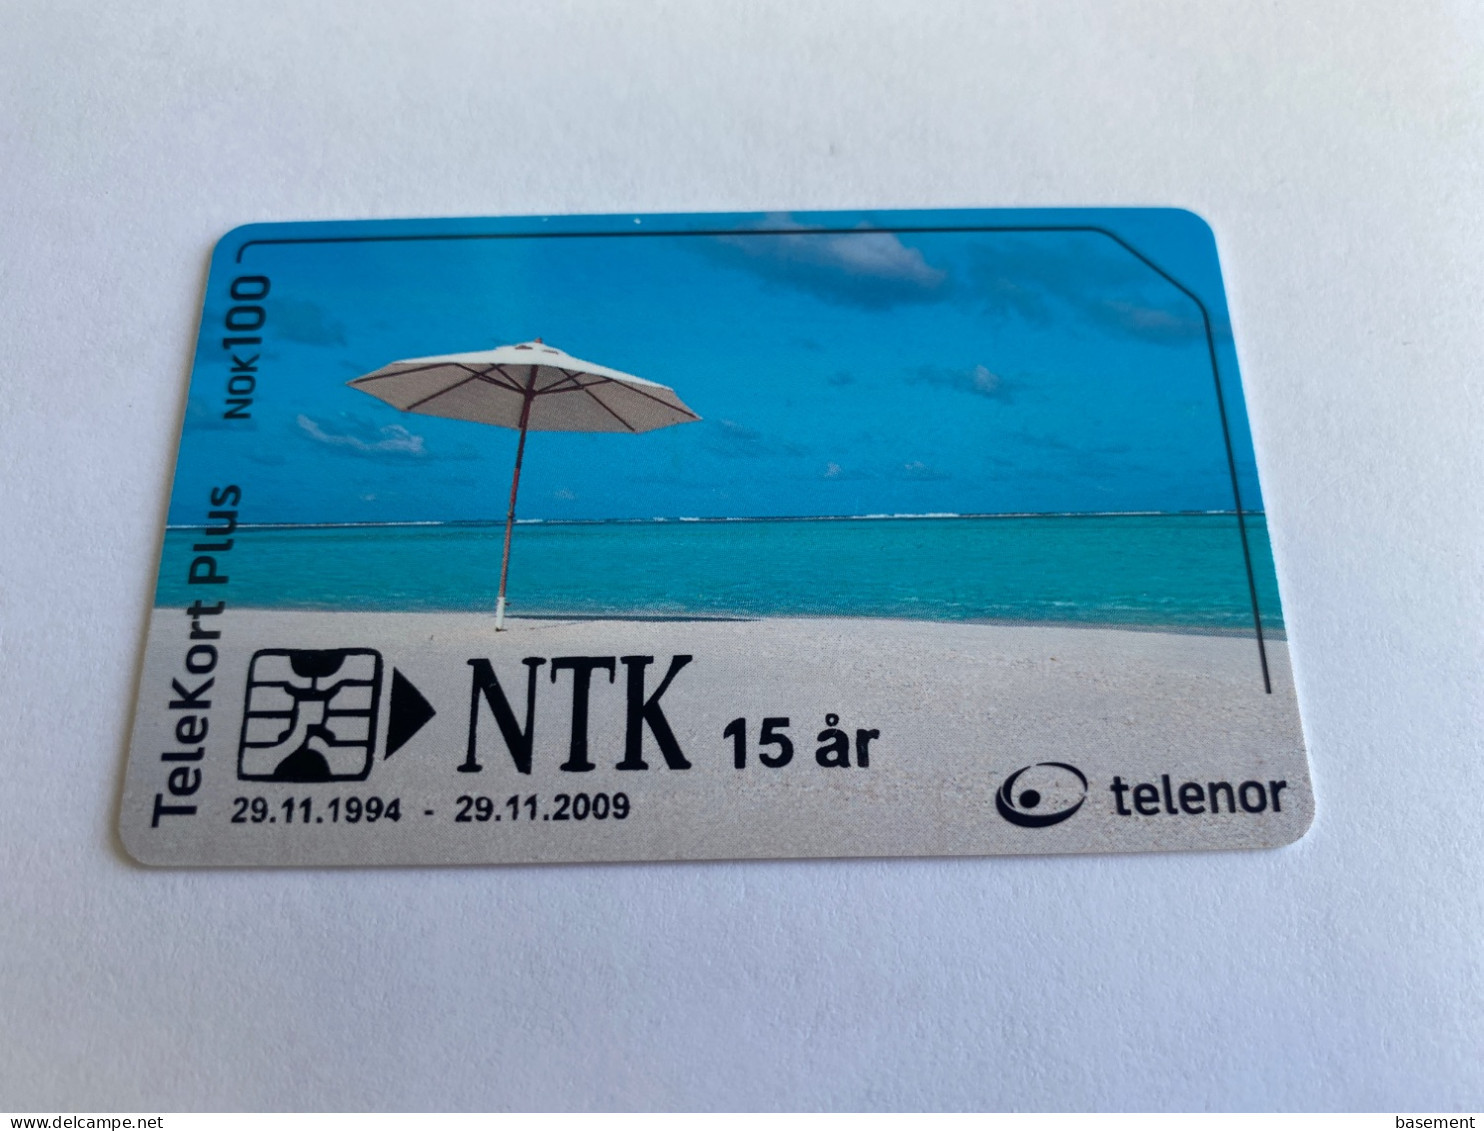 1:004 - Norway Telenor NTK 15 Year - Norway